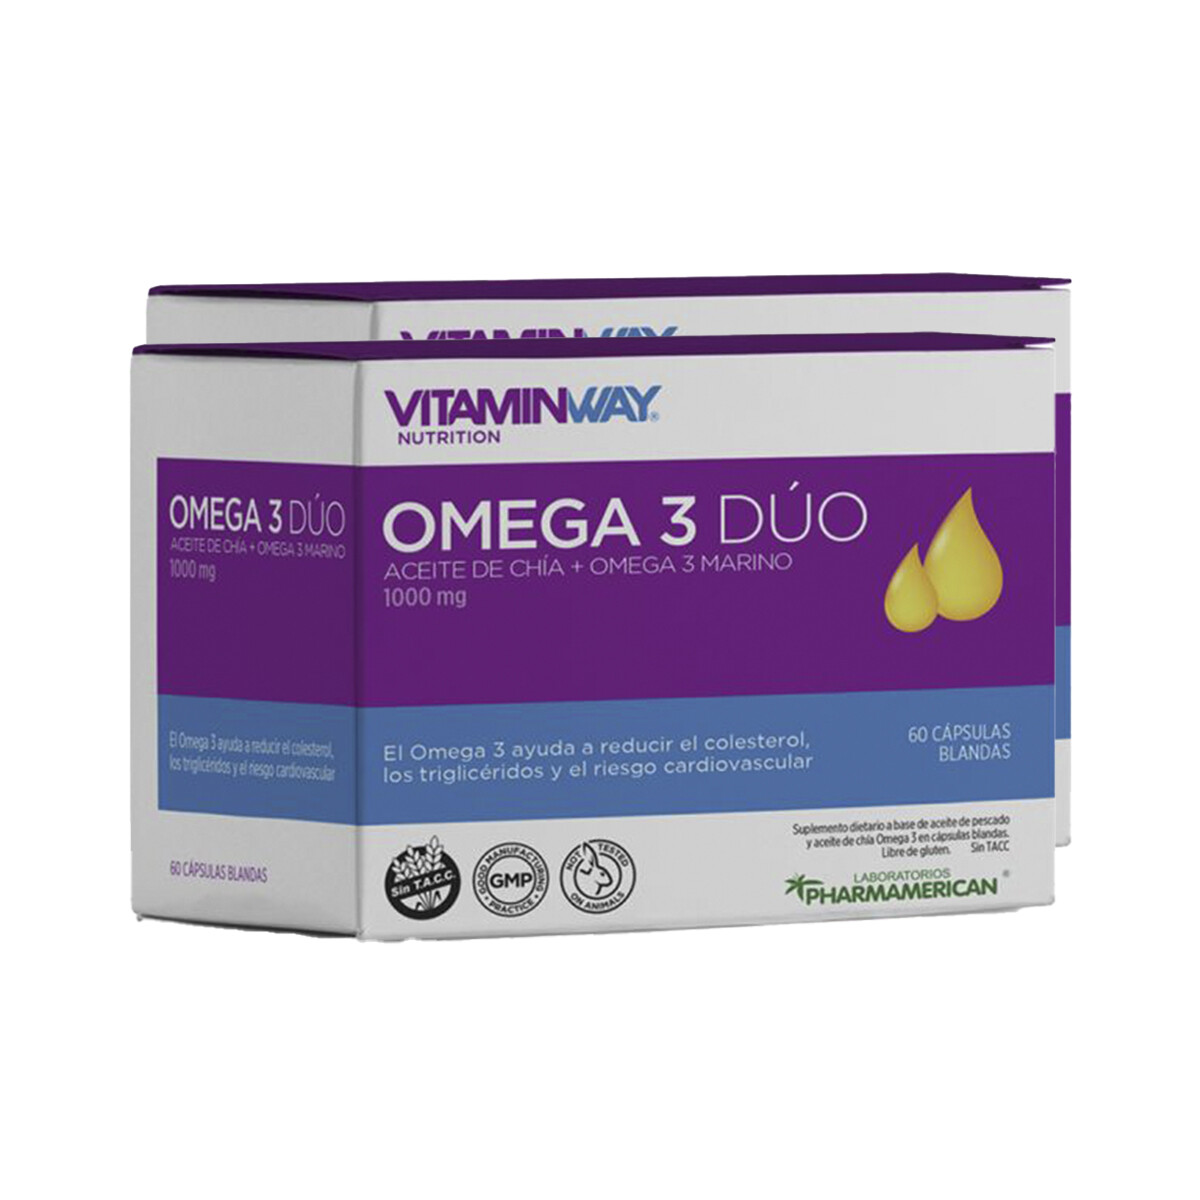 Pack Vitaminway Omega 3 Dúo x 60 cap. 2da unidad 30 % off 